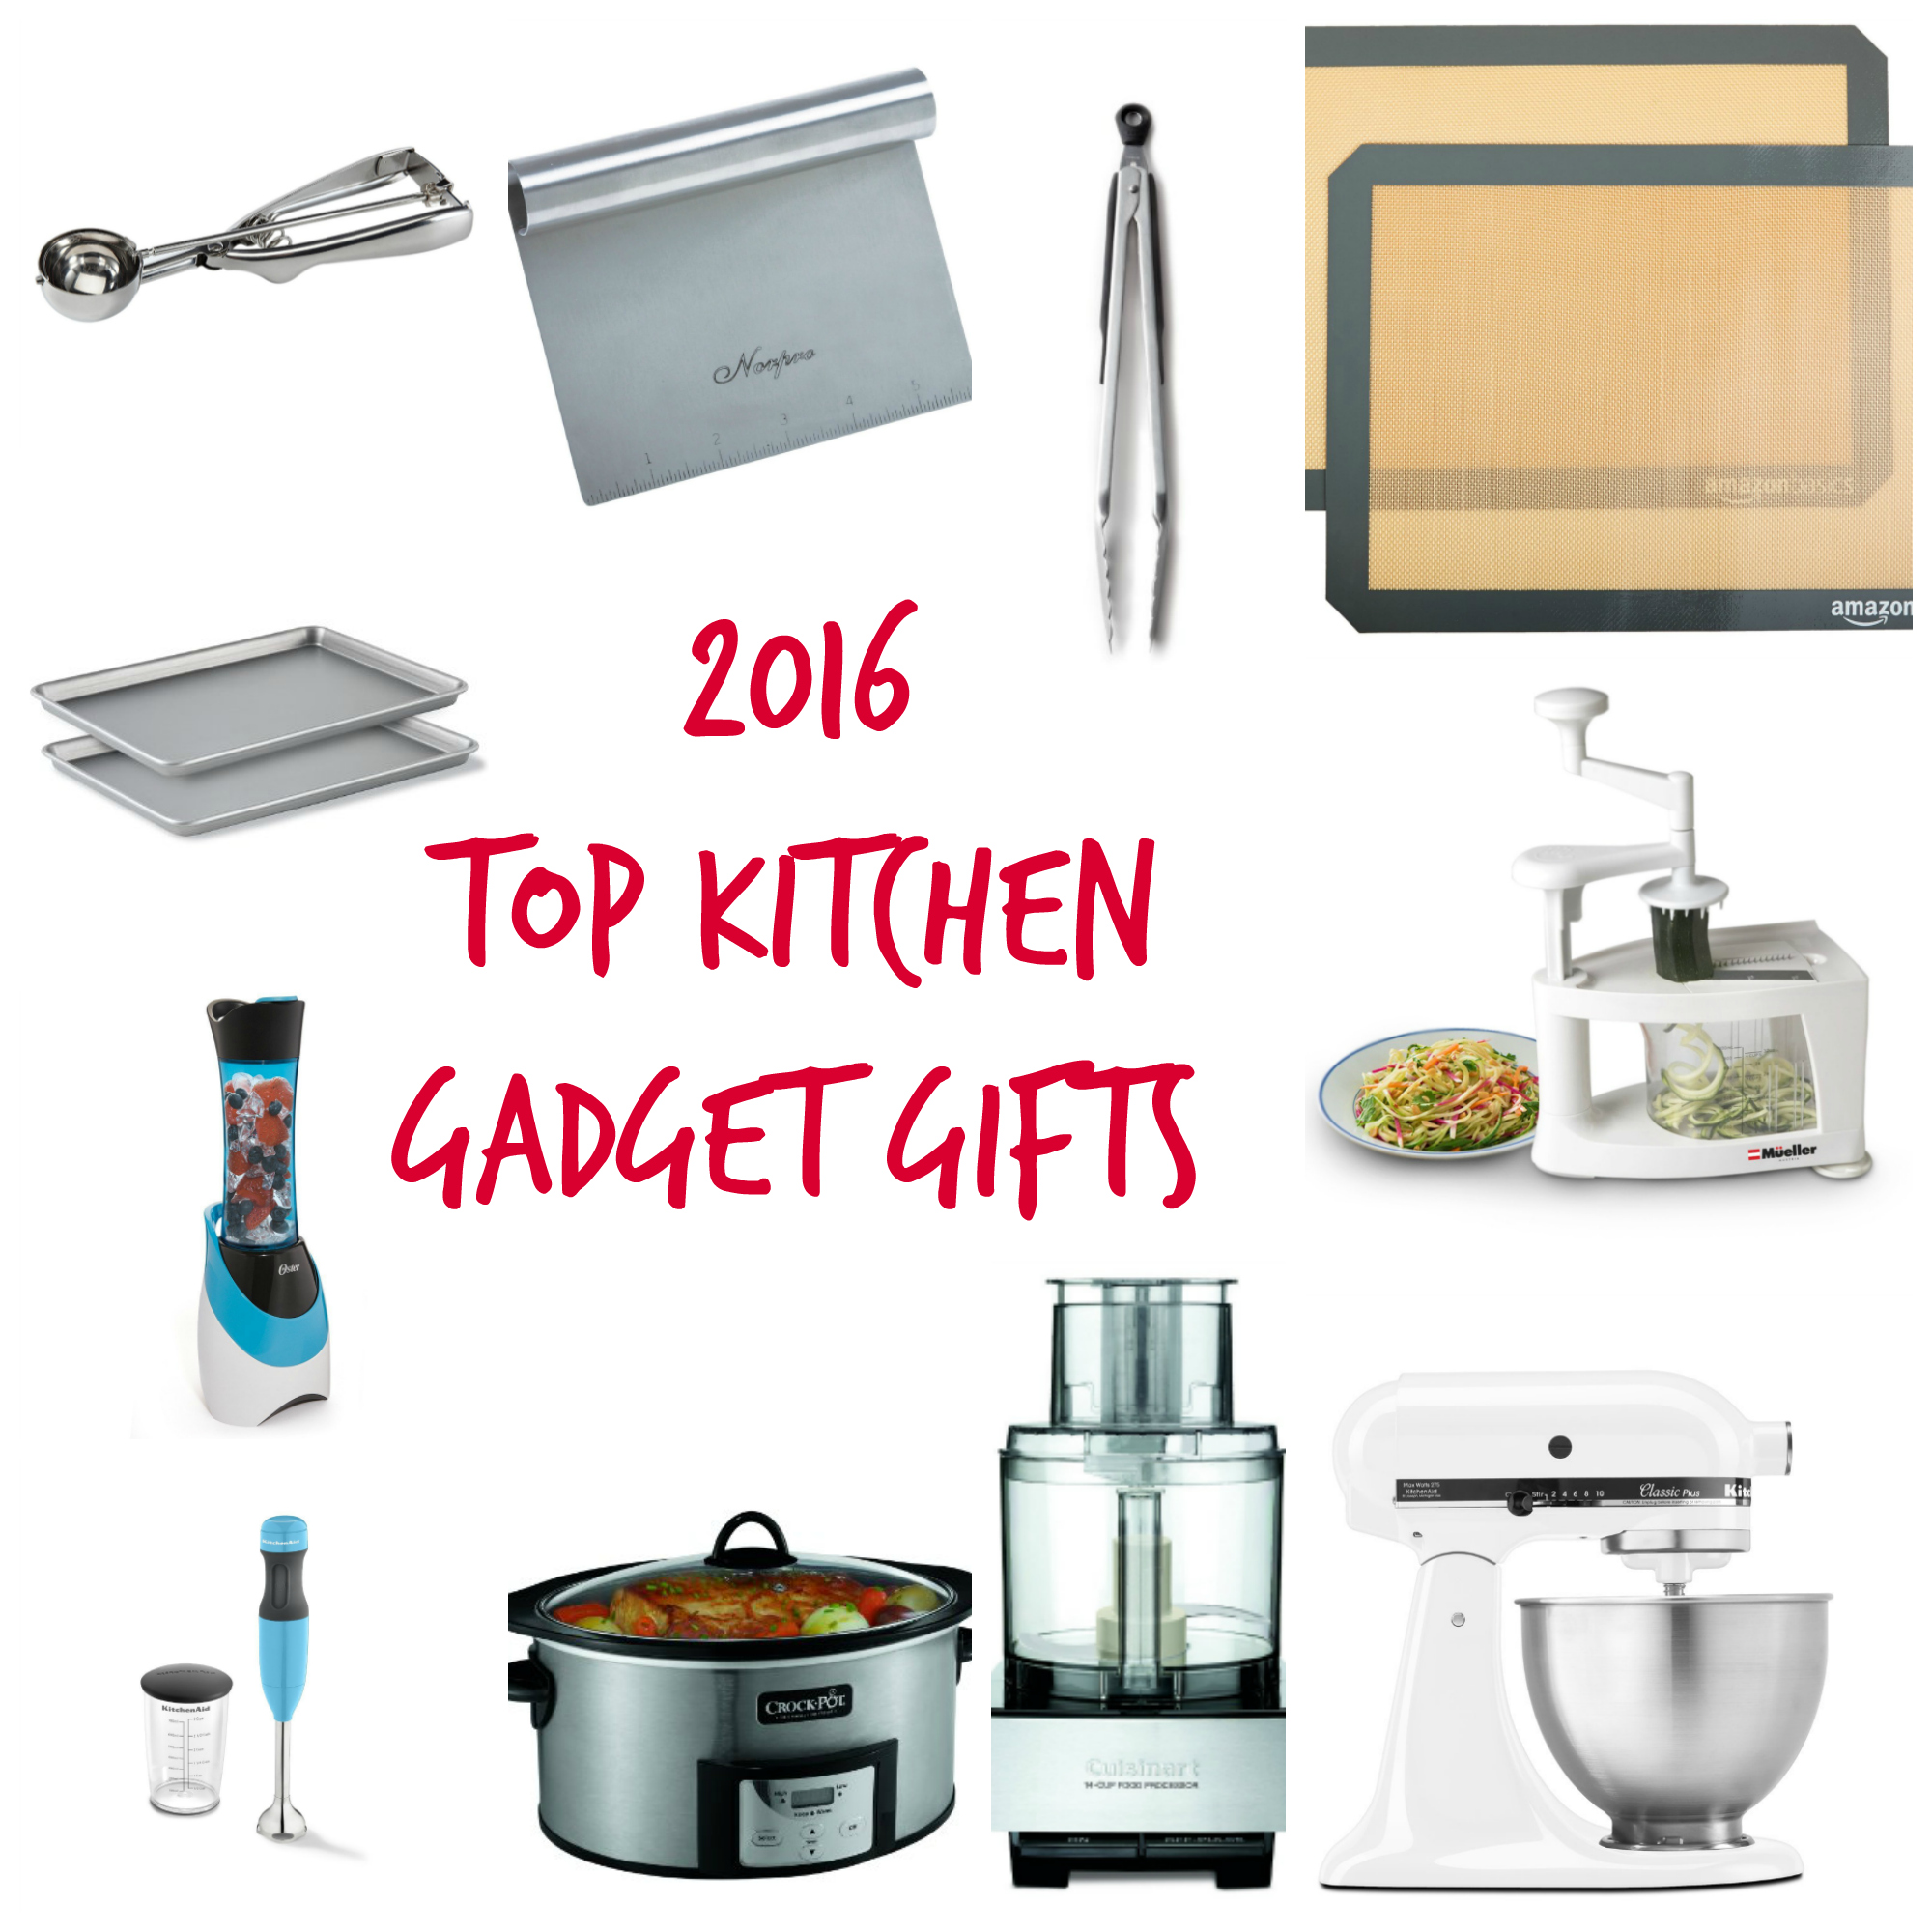 https://laurensharifi.com/wp-content/uploads/2016/11/2016-Top-Kitchen-Gadget-Gifts-2.jpg